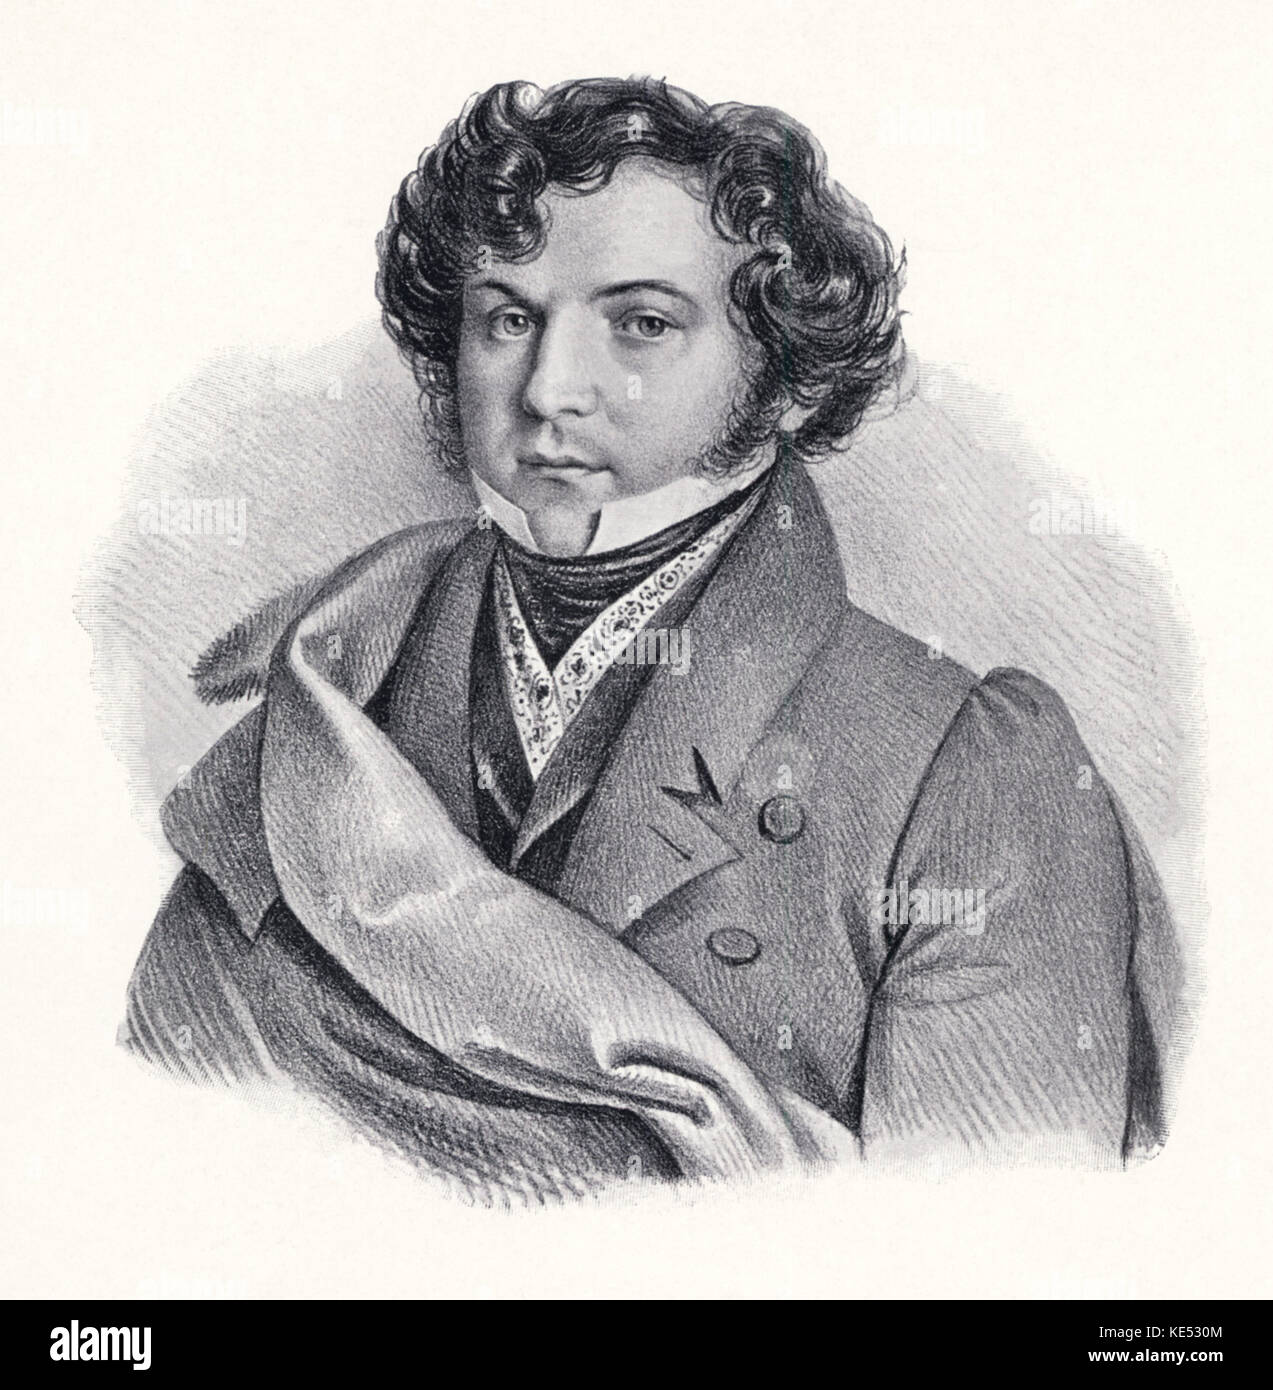 Giovanni Battista Rubini - portrait of the Italian tenor. GBR: 7 April 1794 - 3 March 1854. Stock Photo